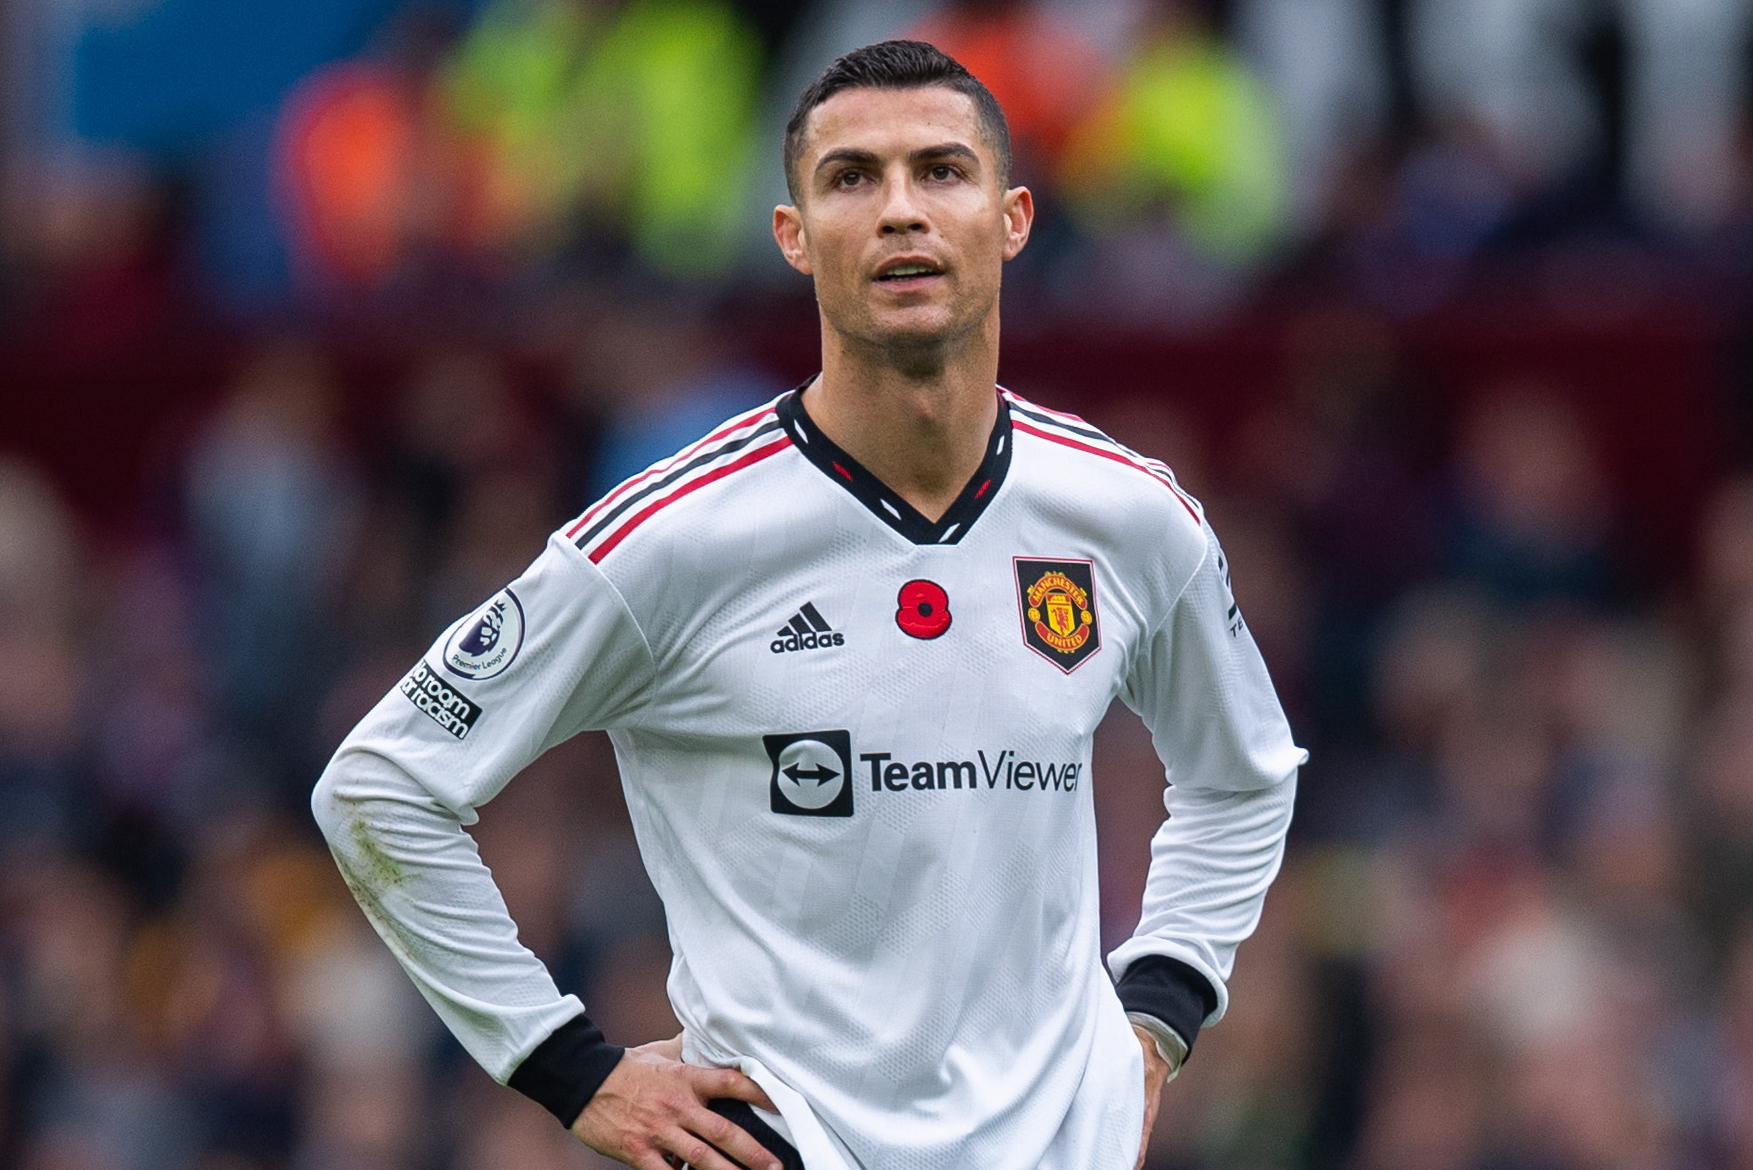 ¿Será su último partido? Cristiano Ronaldo podría retirarse tras el Mundial de Qatar 2022